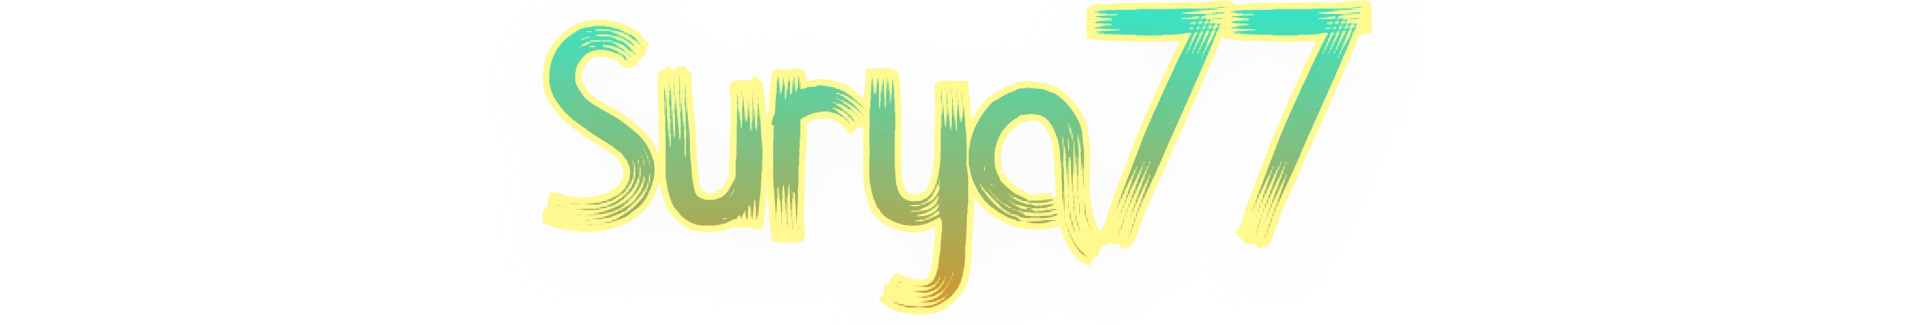 Surya77